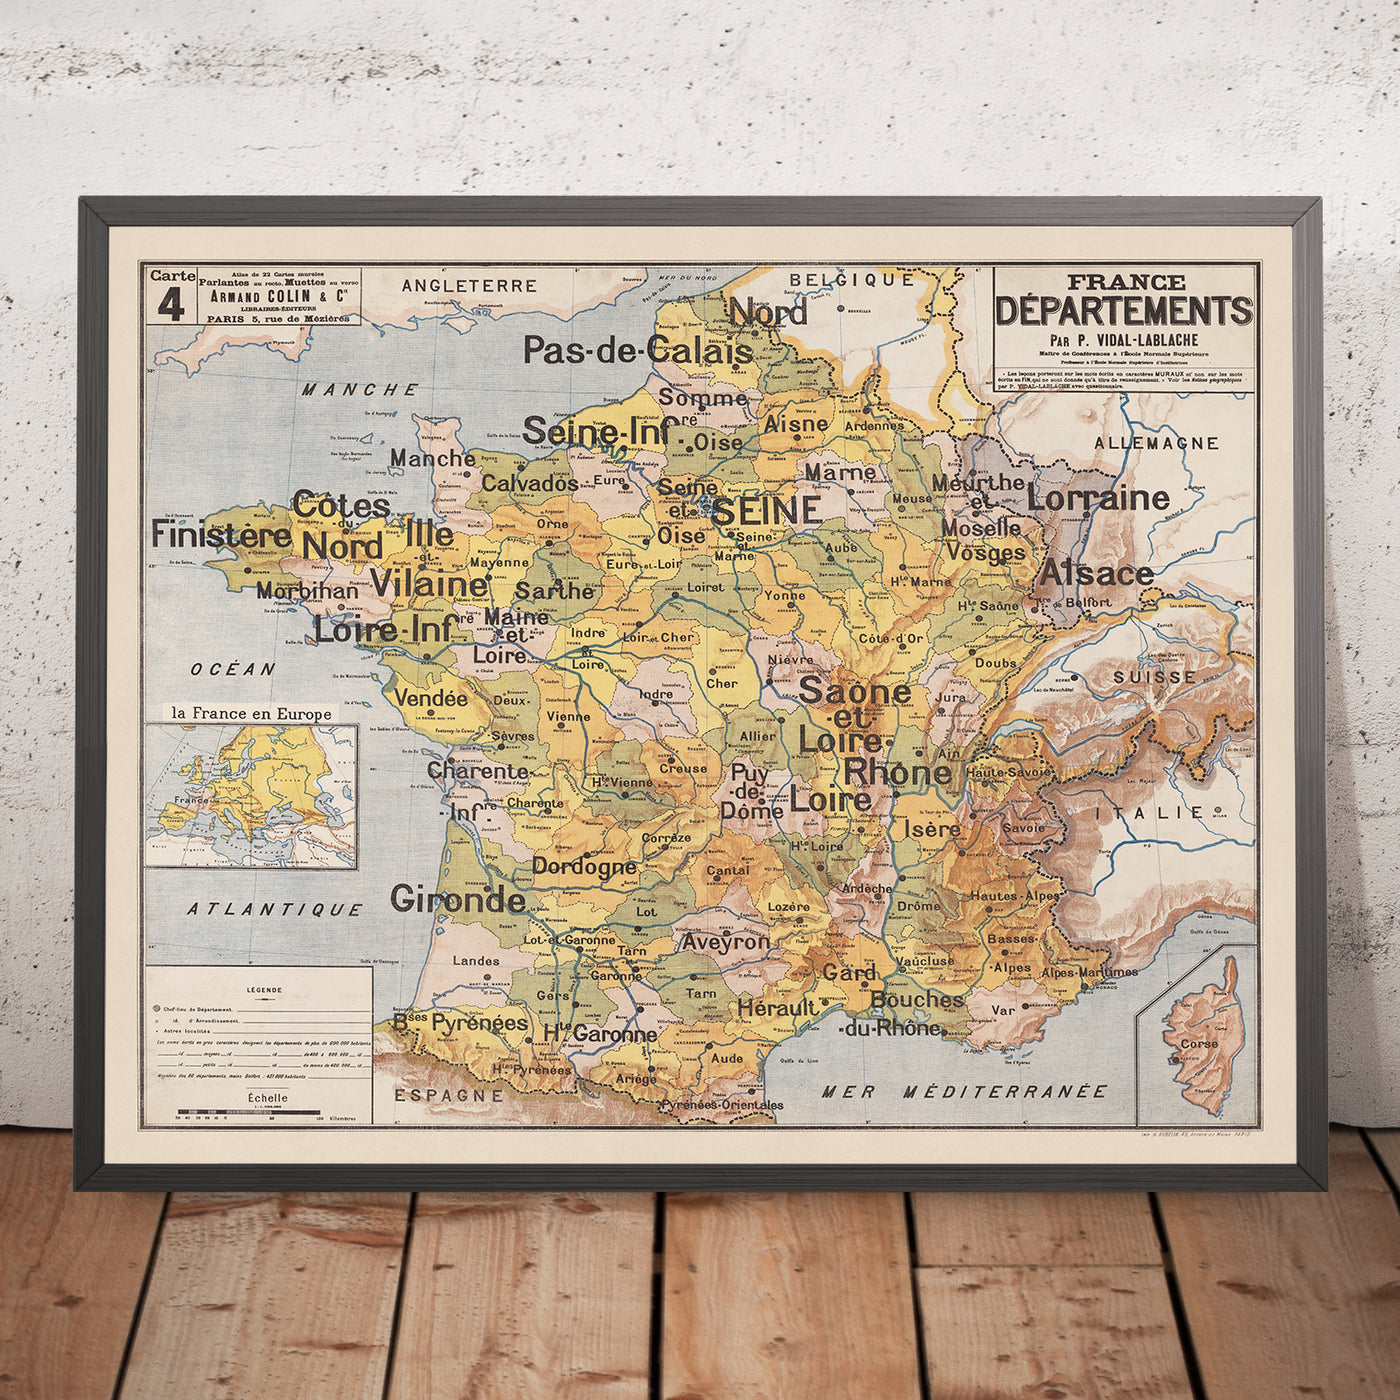 Mapa antiguo de los departamentos de Francia de Vidal Lablache, 1897: gráfico mural educativo